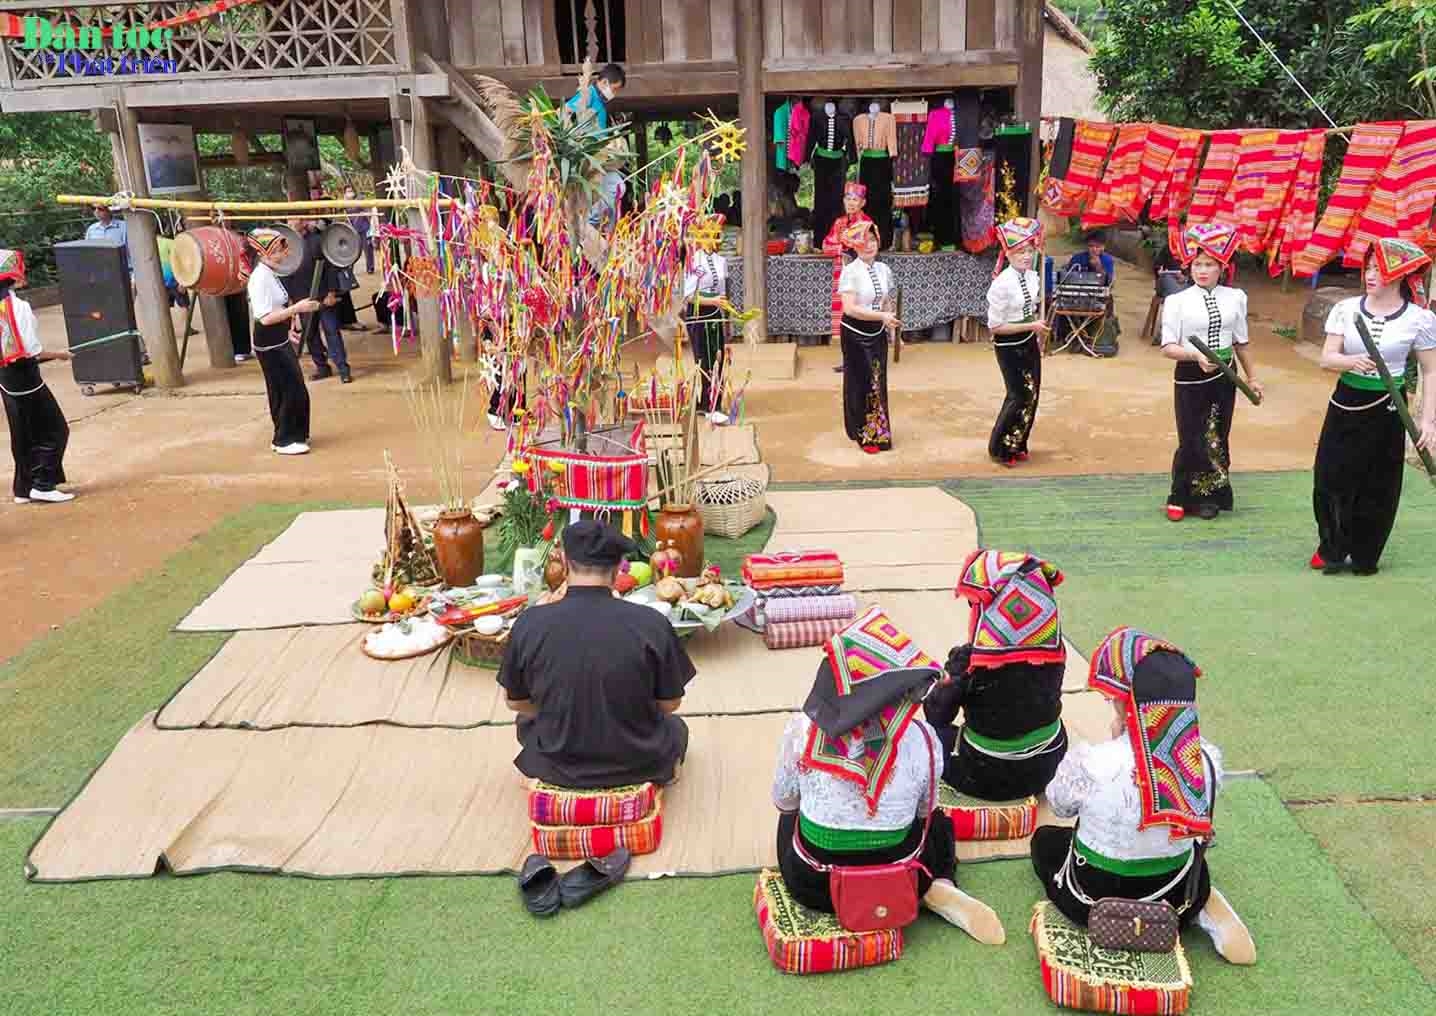 Lễ hội cầu mưa của người Thái ở Mộc Châu (Sơn La) là một trong những lễ nghi nông nghiệp nhằm gửi gắm tới các thế hệ con cháu về thông điệp bảo vệ và tôn trọng môi trường sống